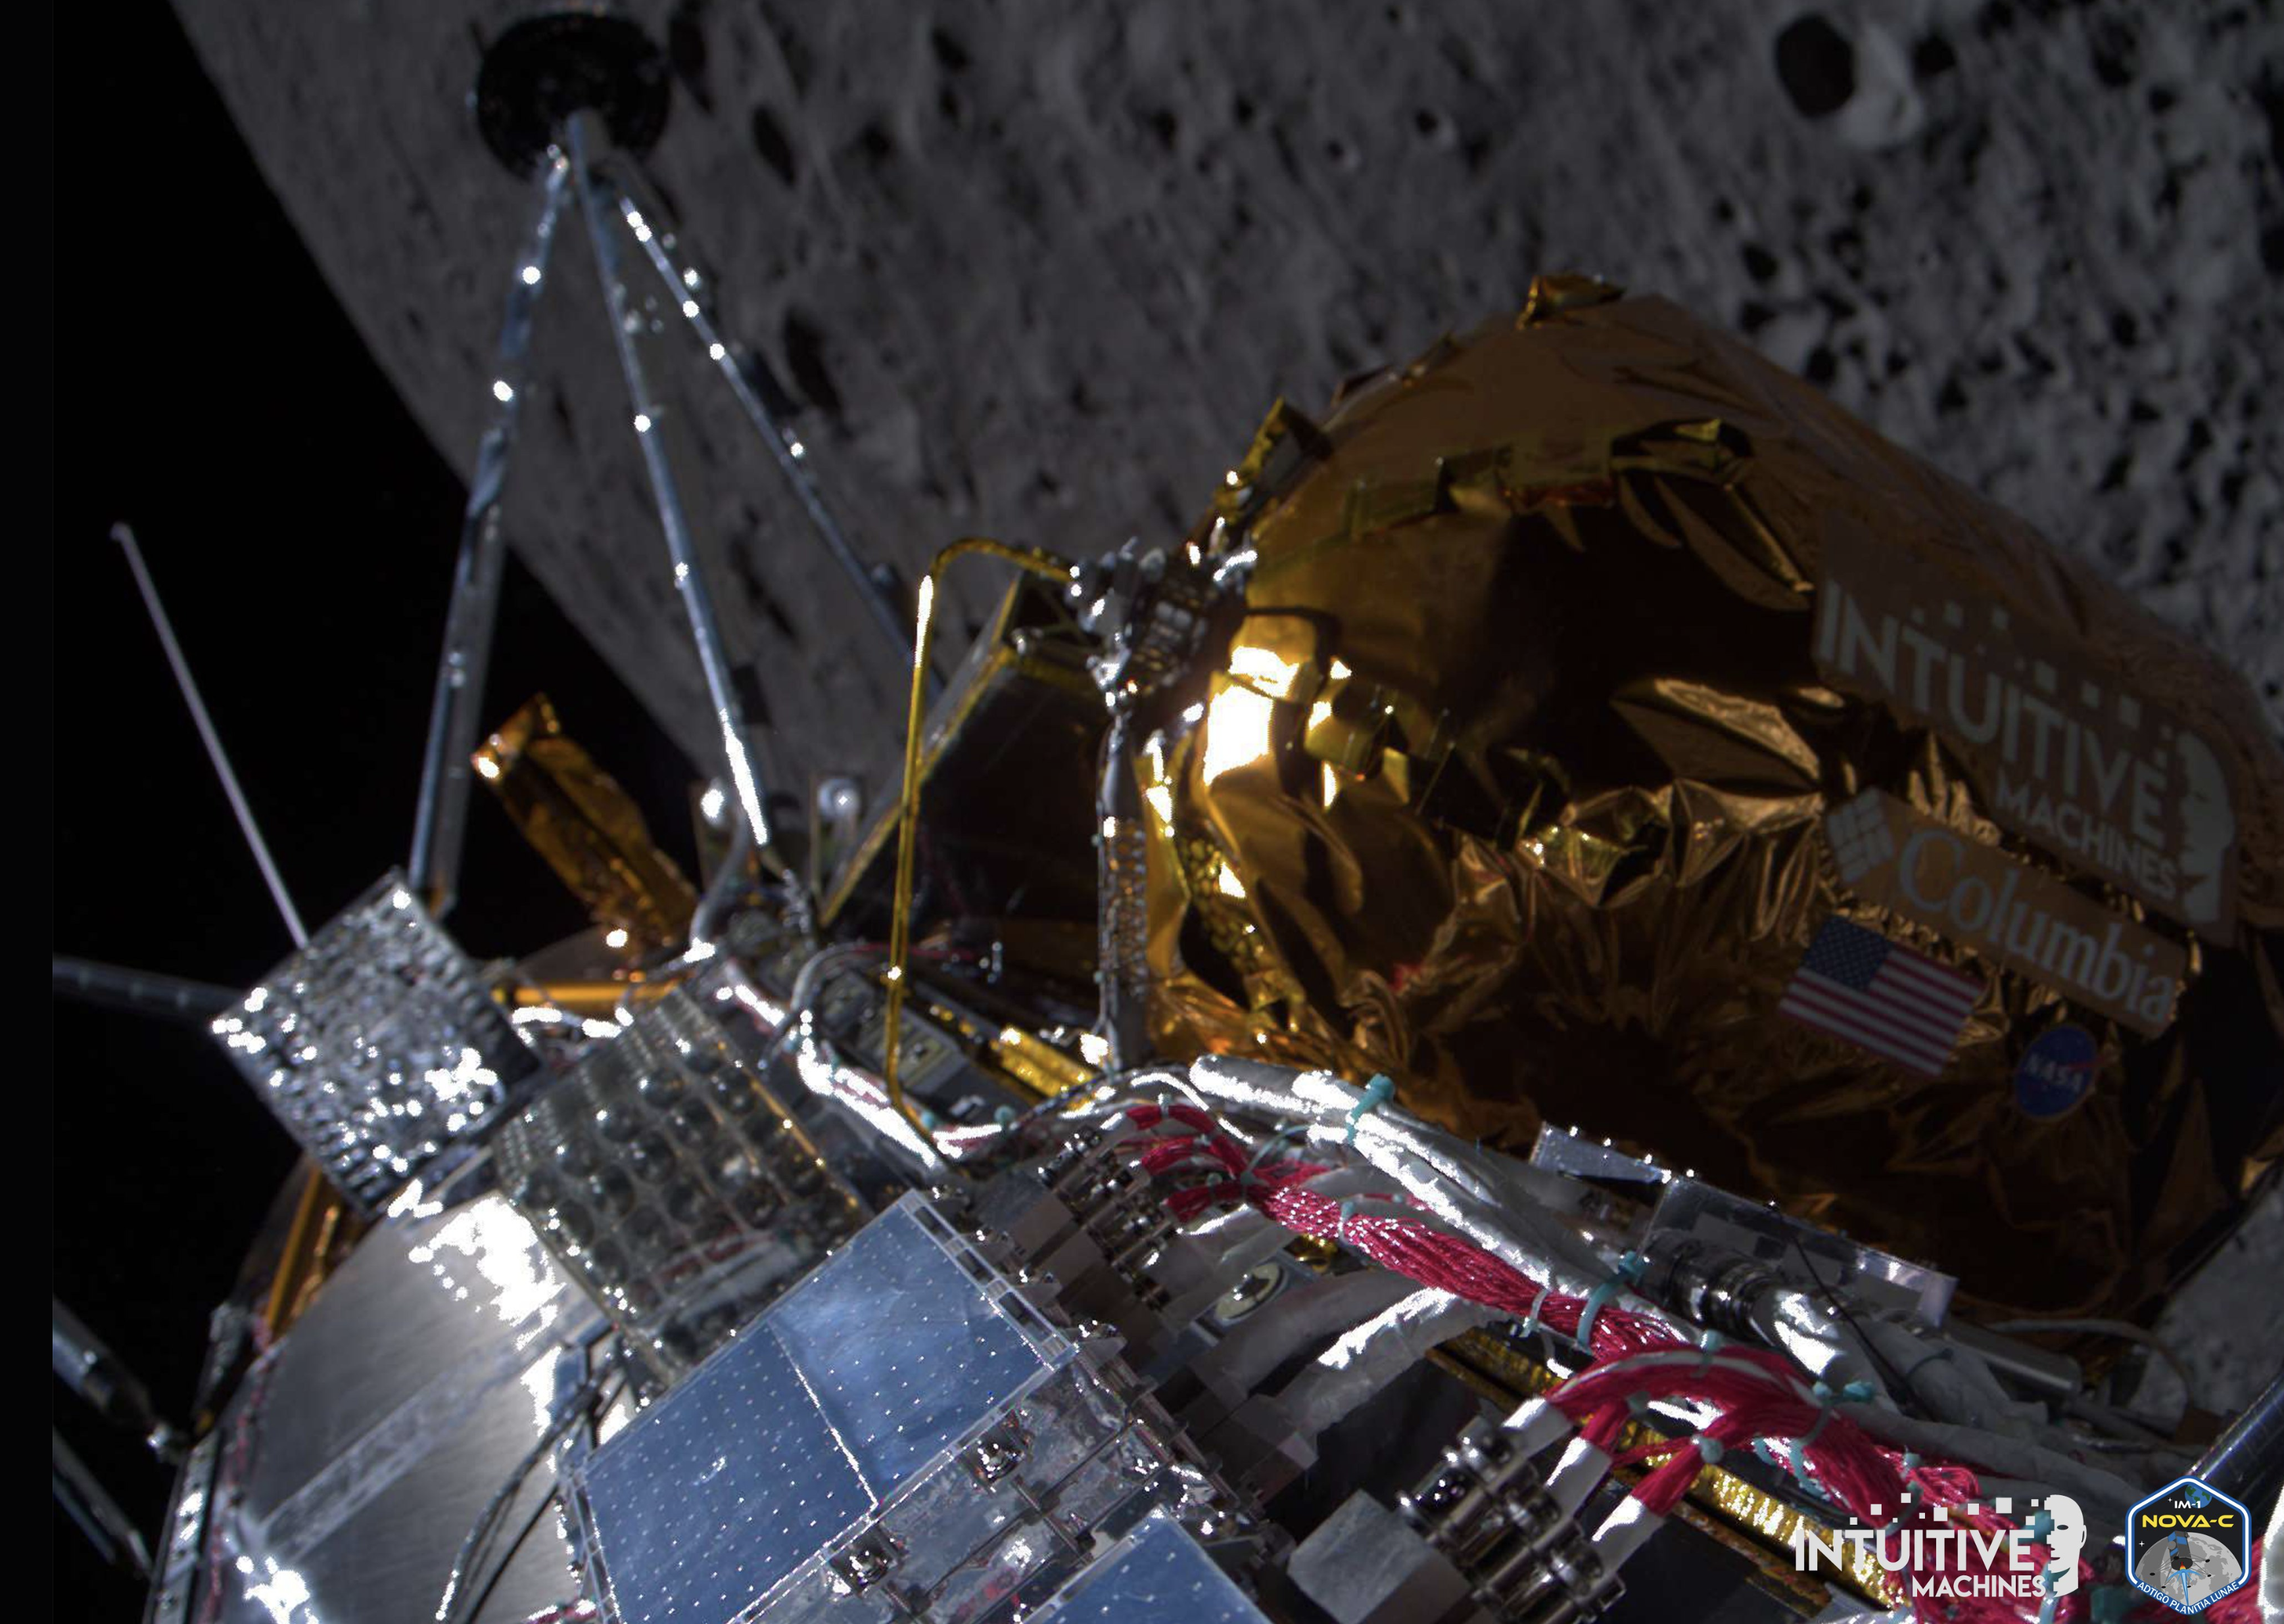 Fotografija pokazuje Odisej kako prolazi preko bliže strane Mjeseca nakon ulaska u Mjesečevu orbitu 21. veljače 2024. Lender je i dalje u izvrsnom zdravlju u mjesečevoj orbiti. Zasluge: Intuitive machines.